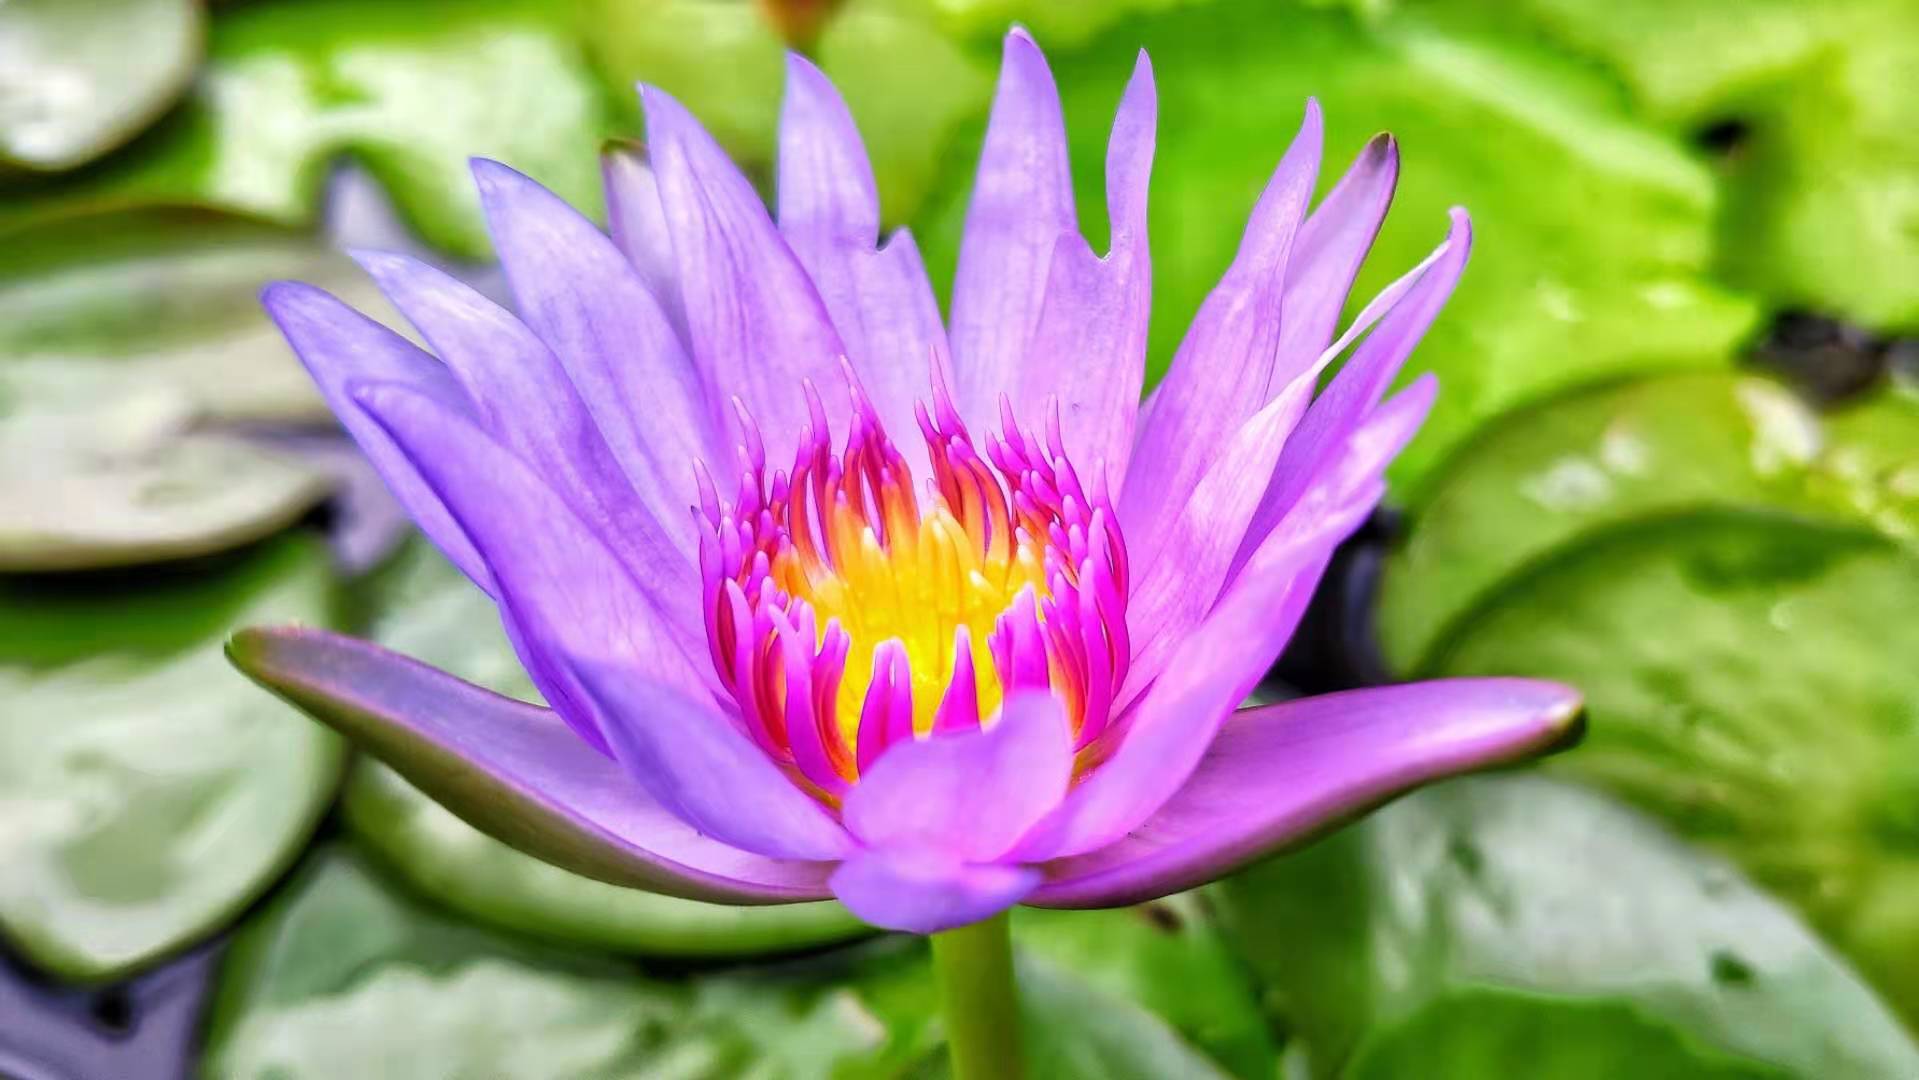 Lotus flower - 01.jpg